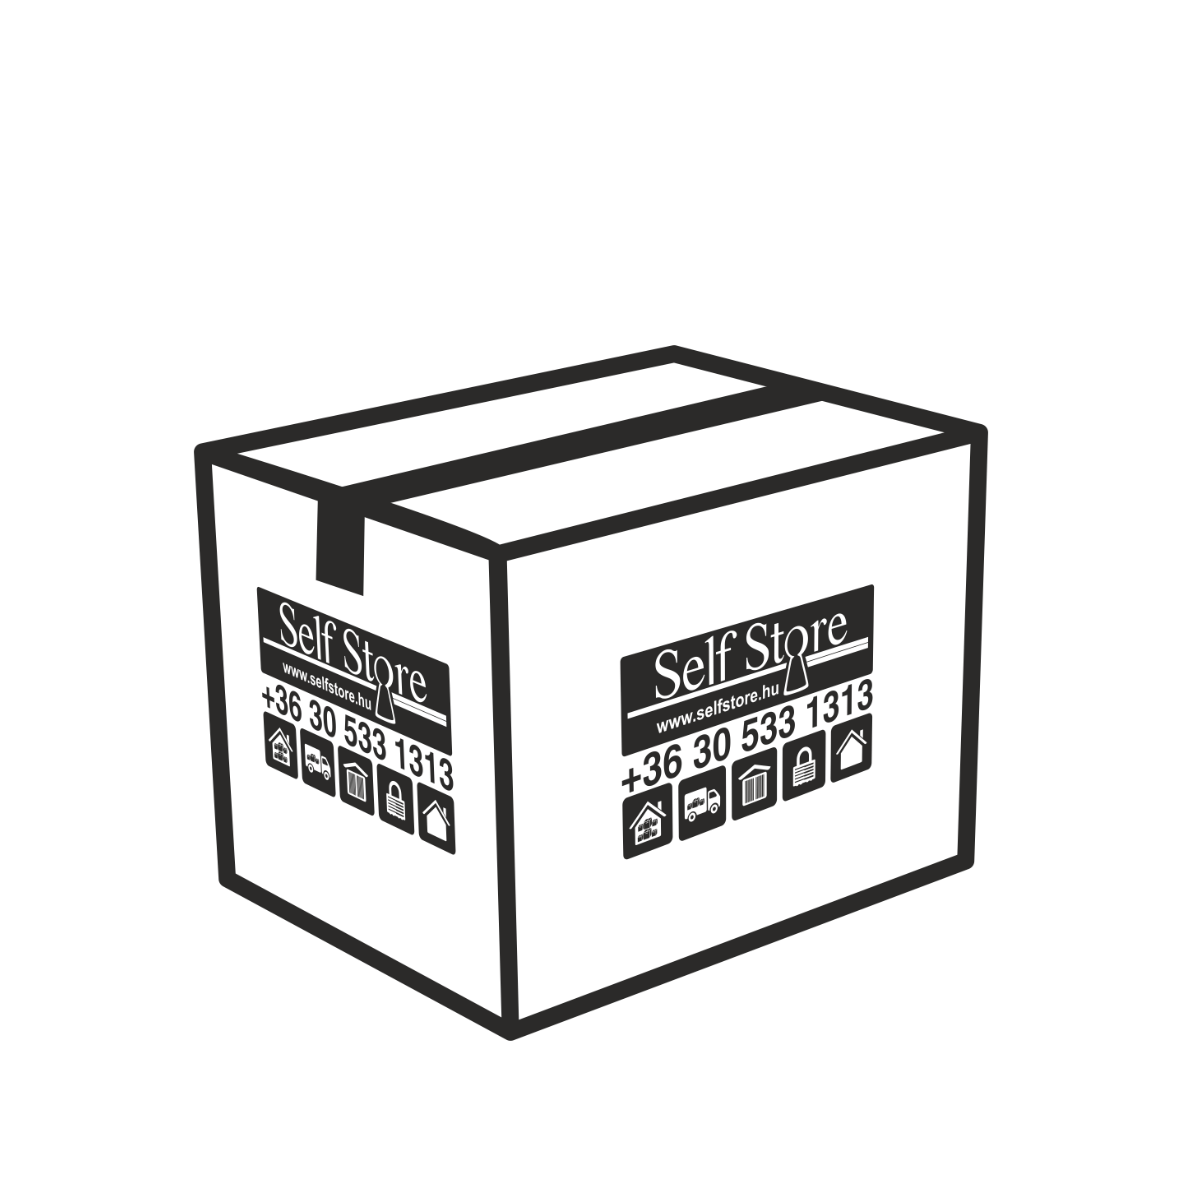 Karton költöztető doboz - közepes méretű - költözéshez, csomagoláshoz | © Self Store